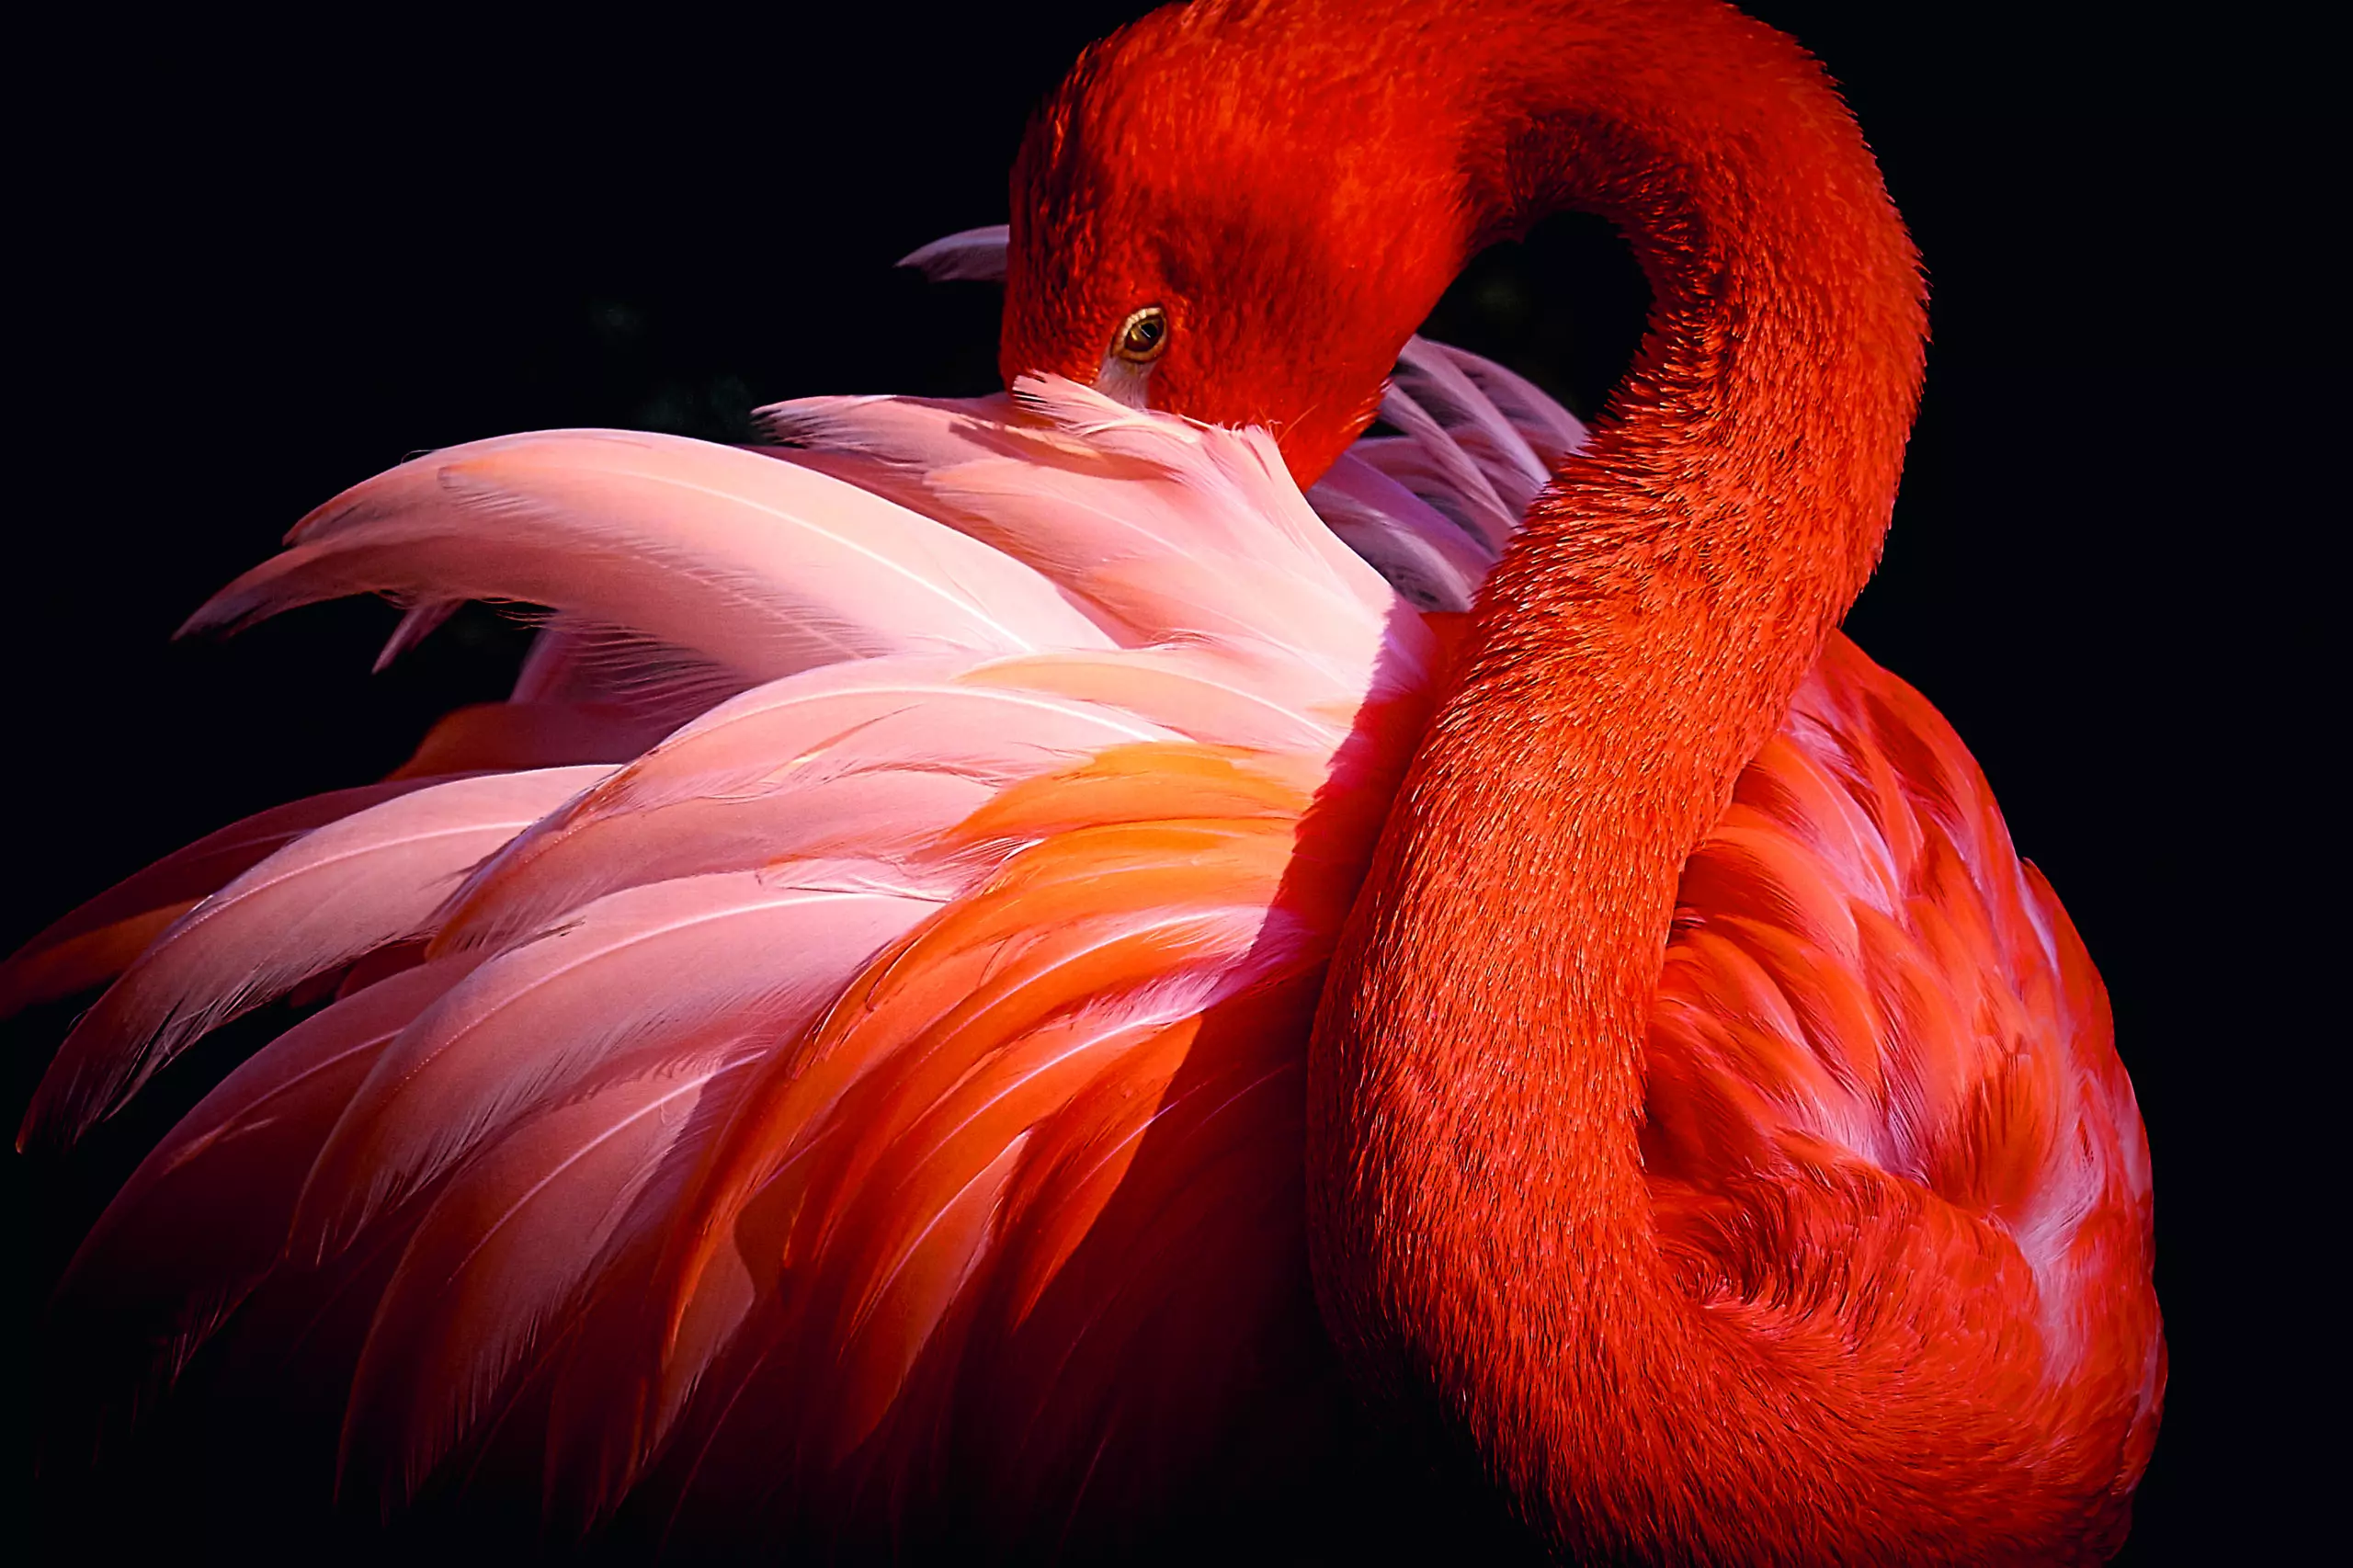 Wandbild (5617) flamingo by Makoto Nishikura,1x.com präsentiert: Tiere,Kinder,Wassersport,Sonstige Tiere,Wildtiere,Fische,Meere,Unterwasser,Sonstiges Kreatives